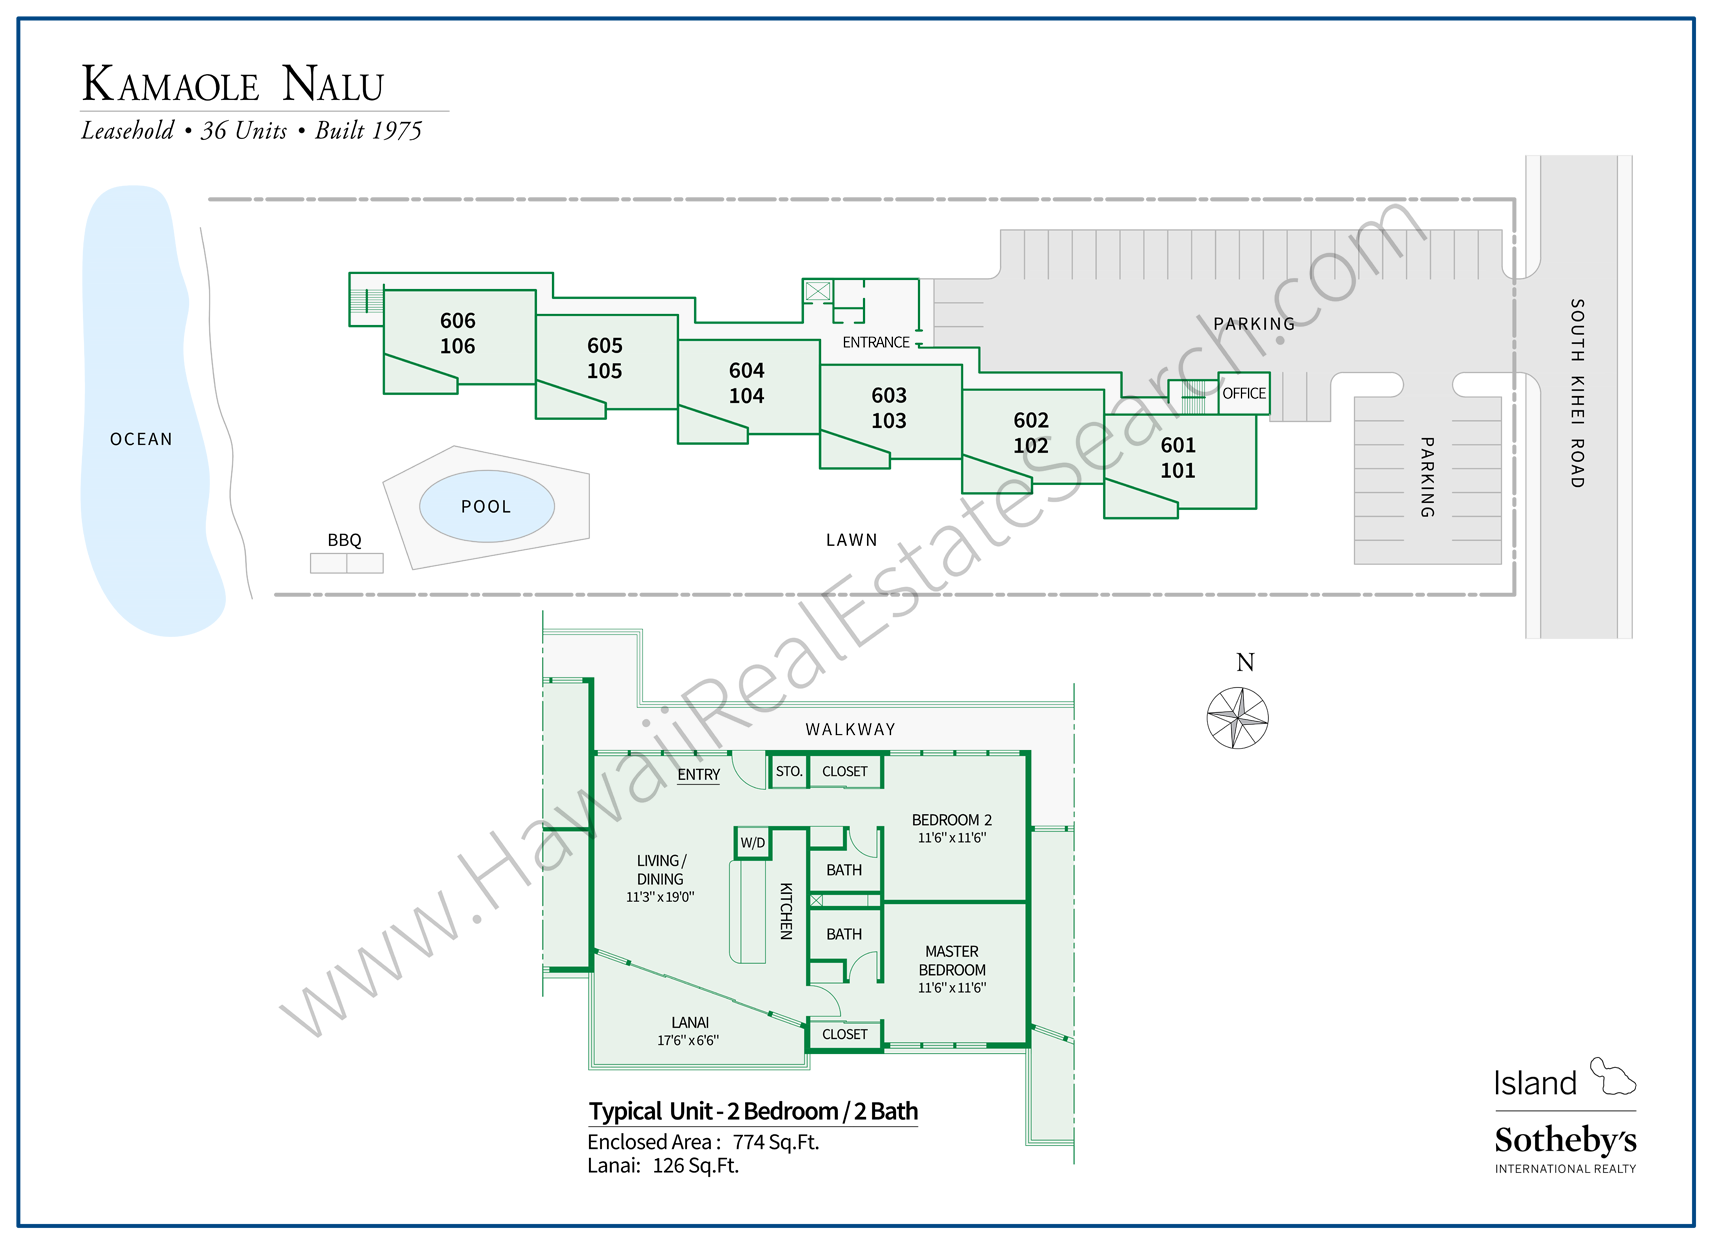 Kamaole Nalu Map with Floor Plan